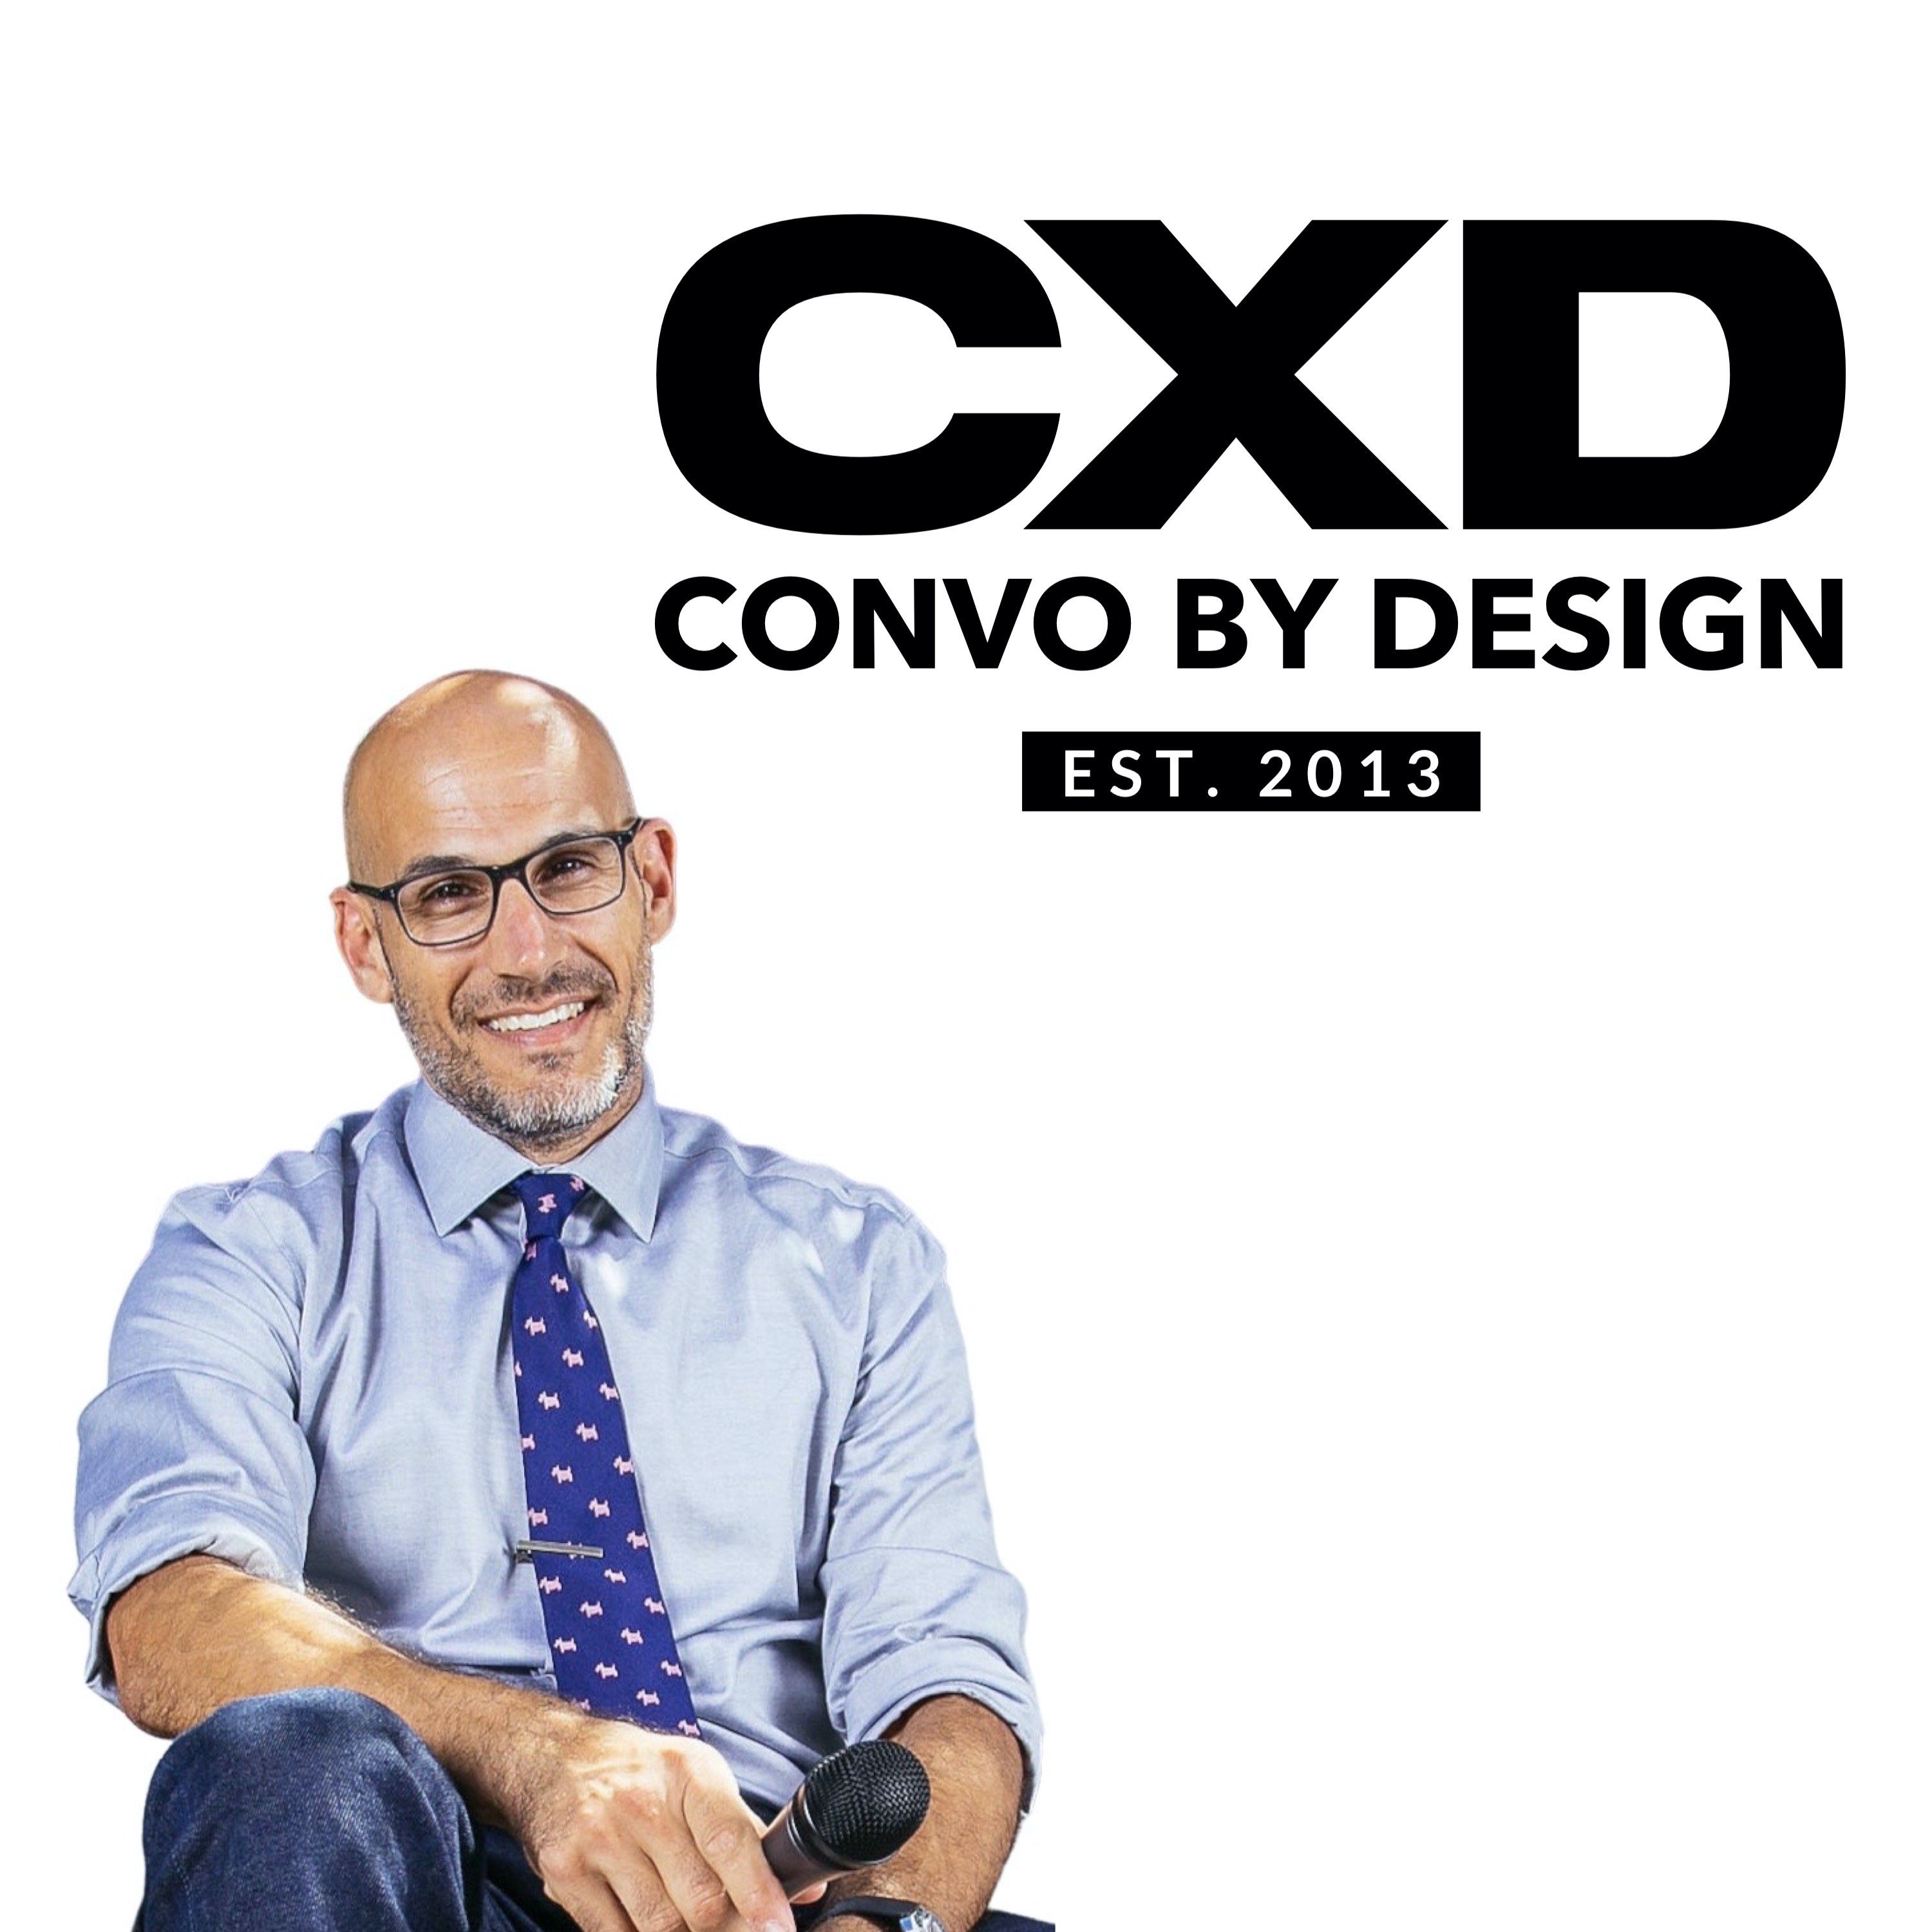 Convo By Design®